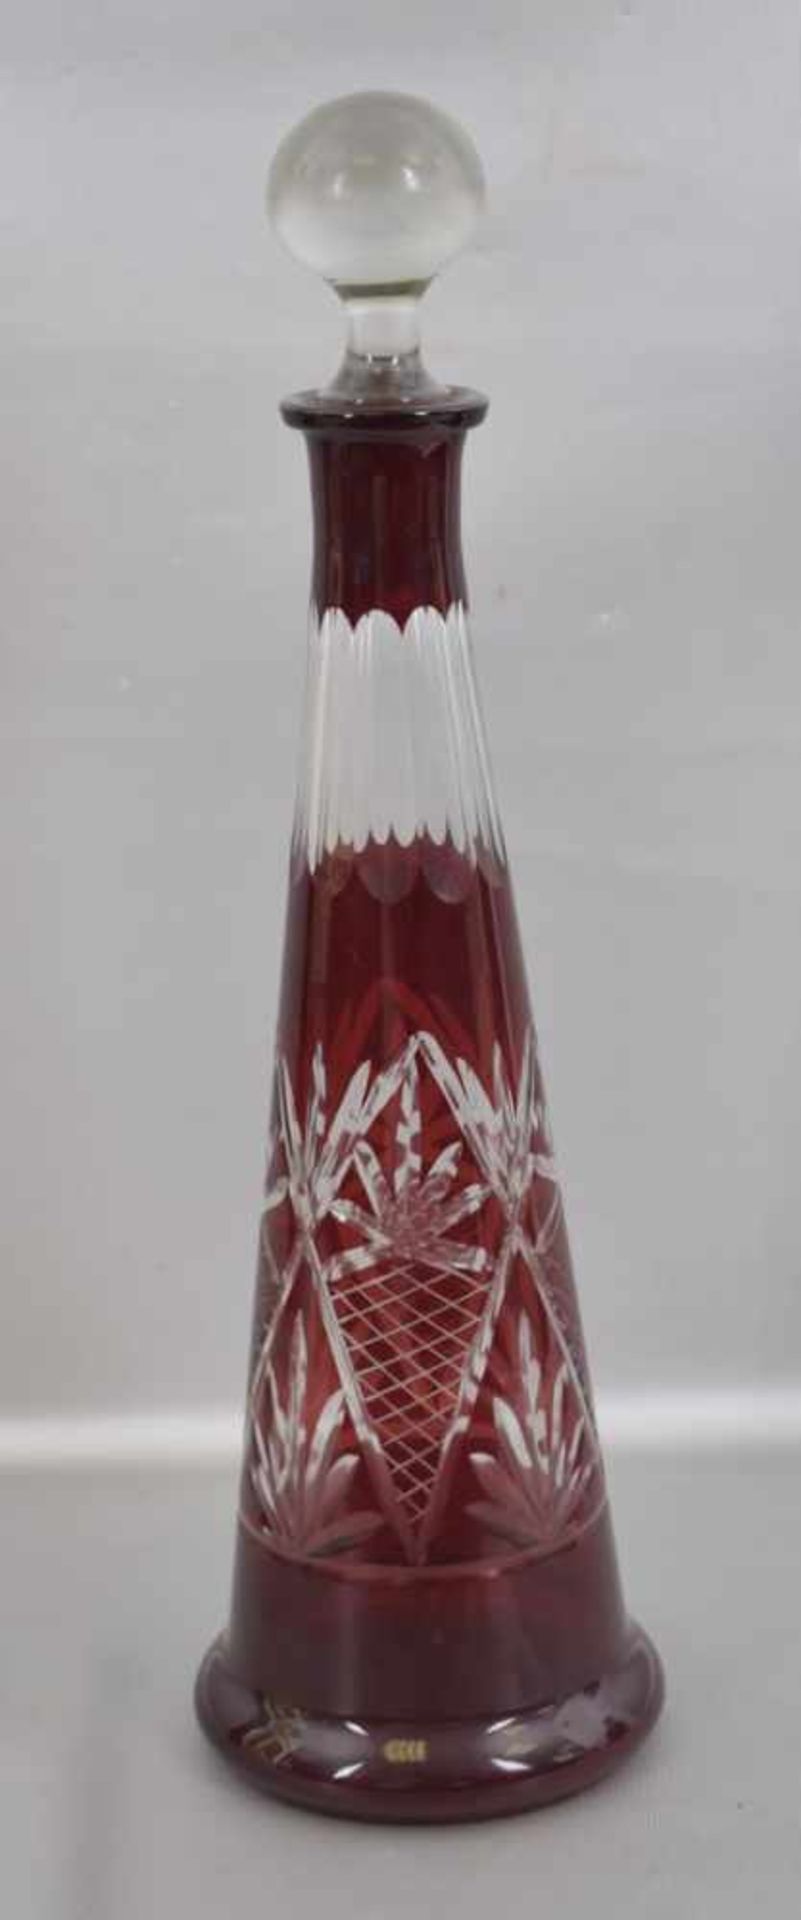 Karaffe farbl. Kristallglas, geschliffen verziert, mit rotem Überfang, H 40 cm